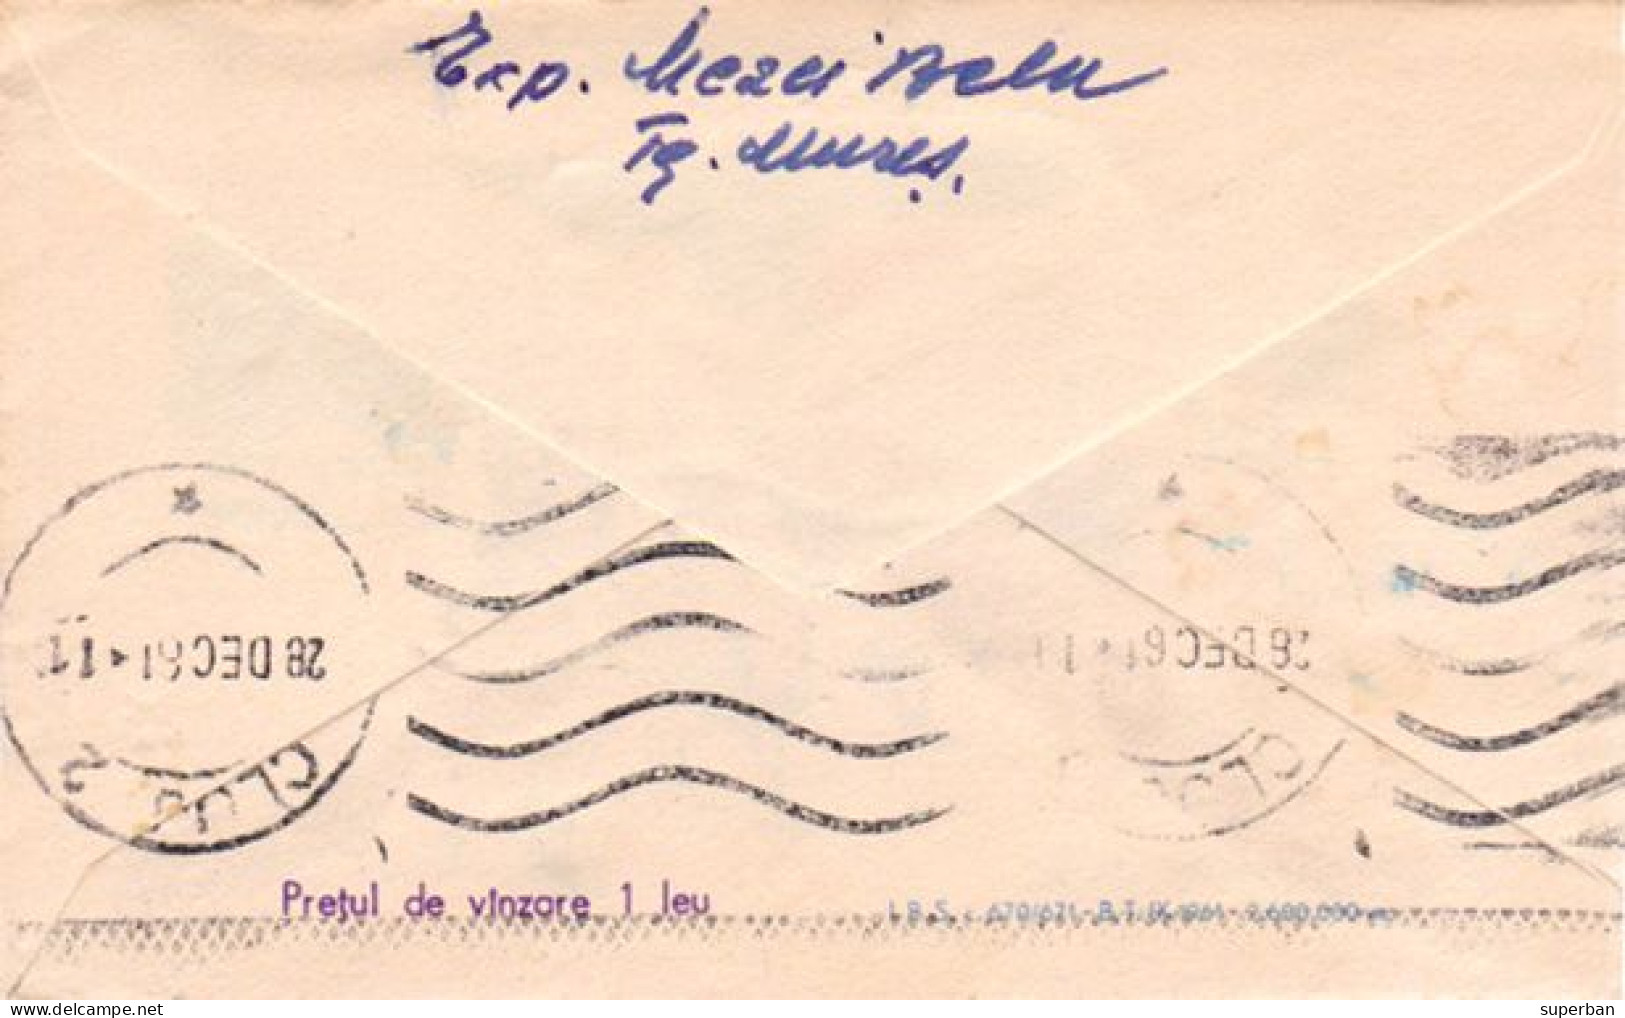 STATIONERY / ENTIER POSTAL LILLIPUTIEN ( ~ 6,5 X 10,5  CM ) - CAPRIOR / CHVREUIL Et POUPÉE / ROEBUCK ~ 1961 (an672) - Interi Postali